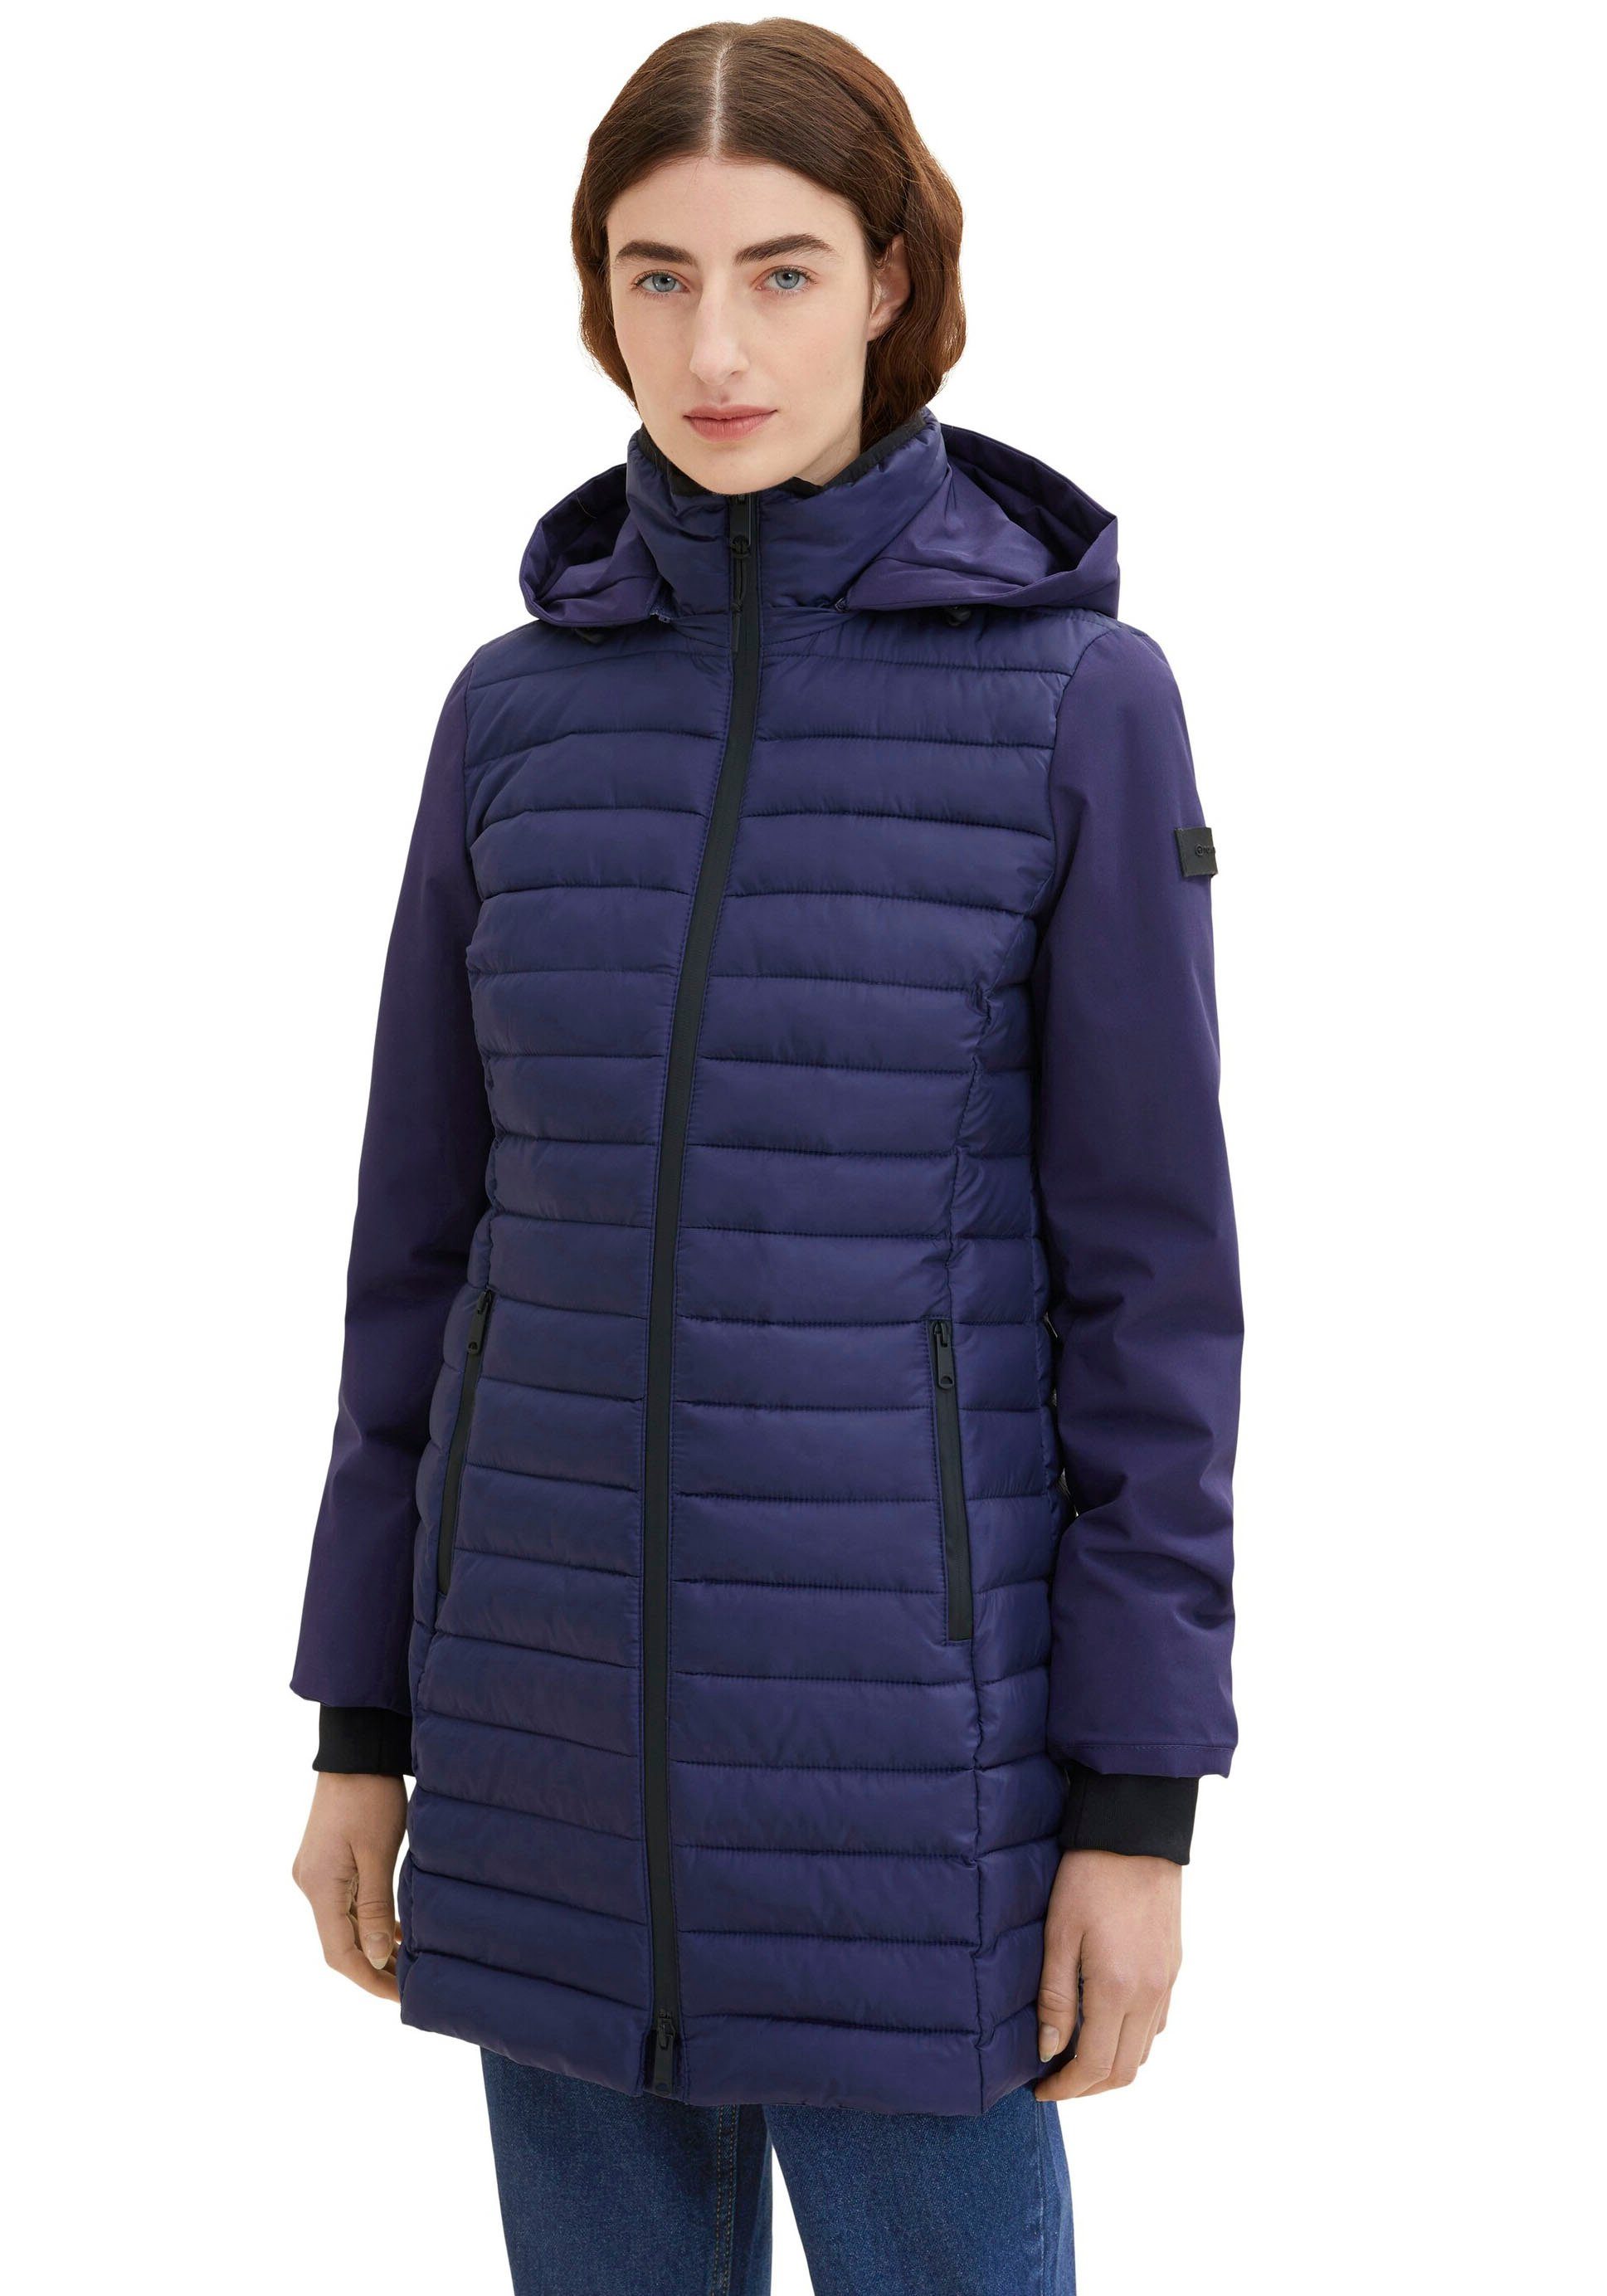 Tom Tailor Polo Team Jacken für Damen online kaufen | OTTO